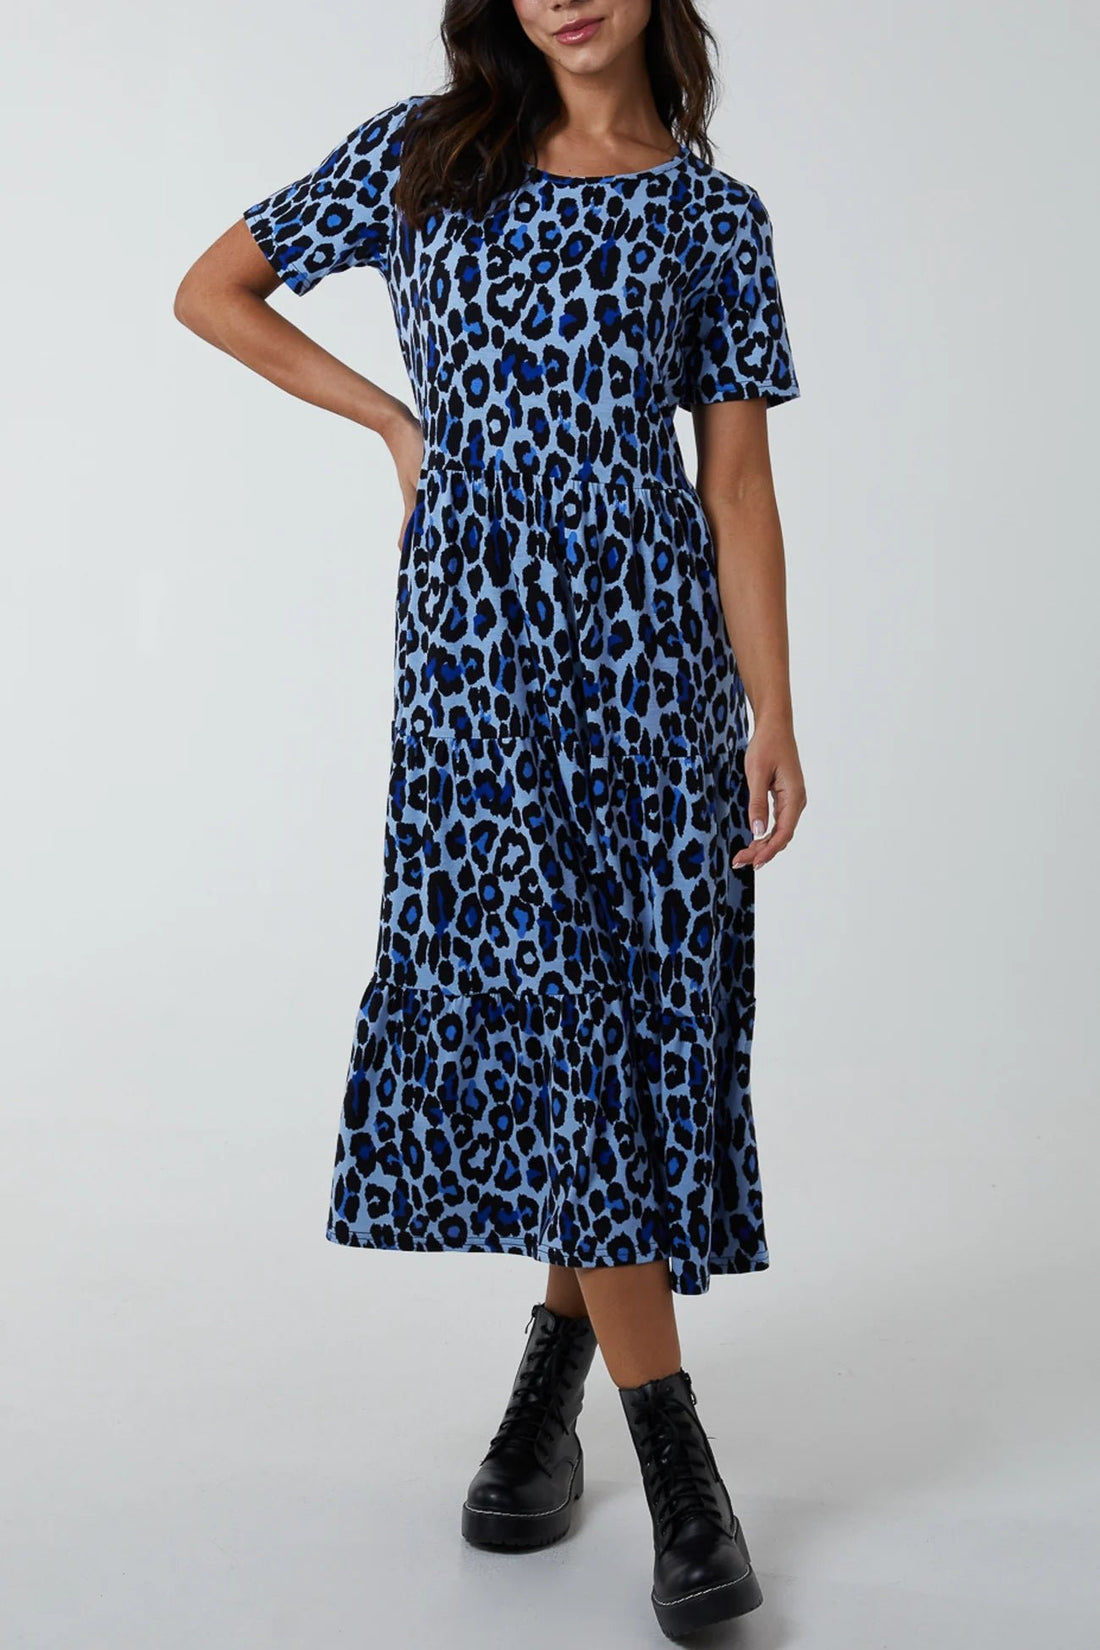 Leopard Print Tiered Smock Midi Dress - Pinstripe